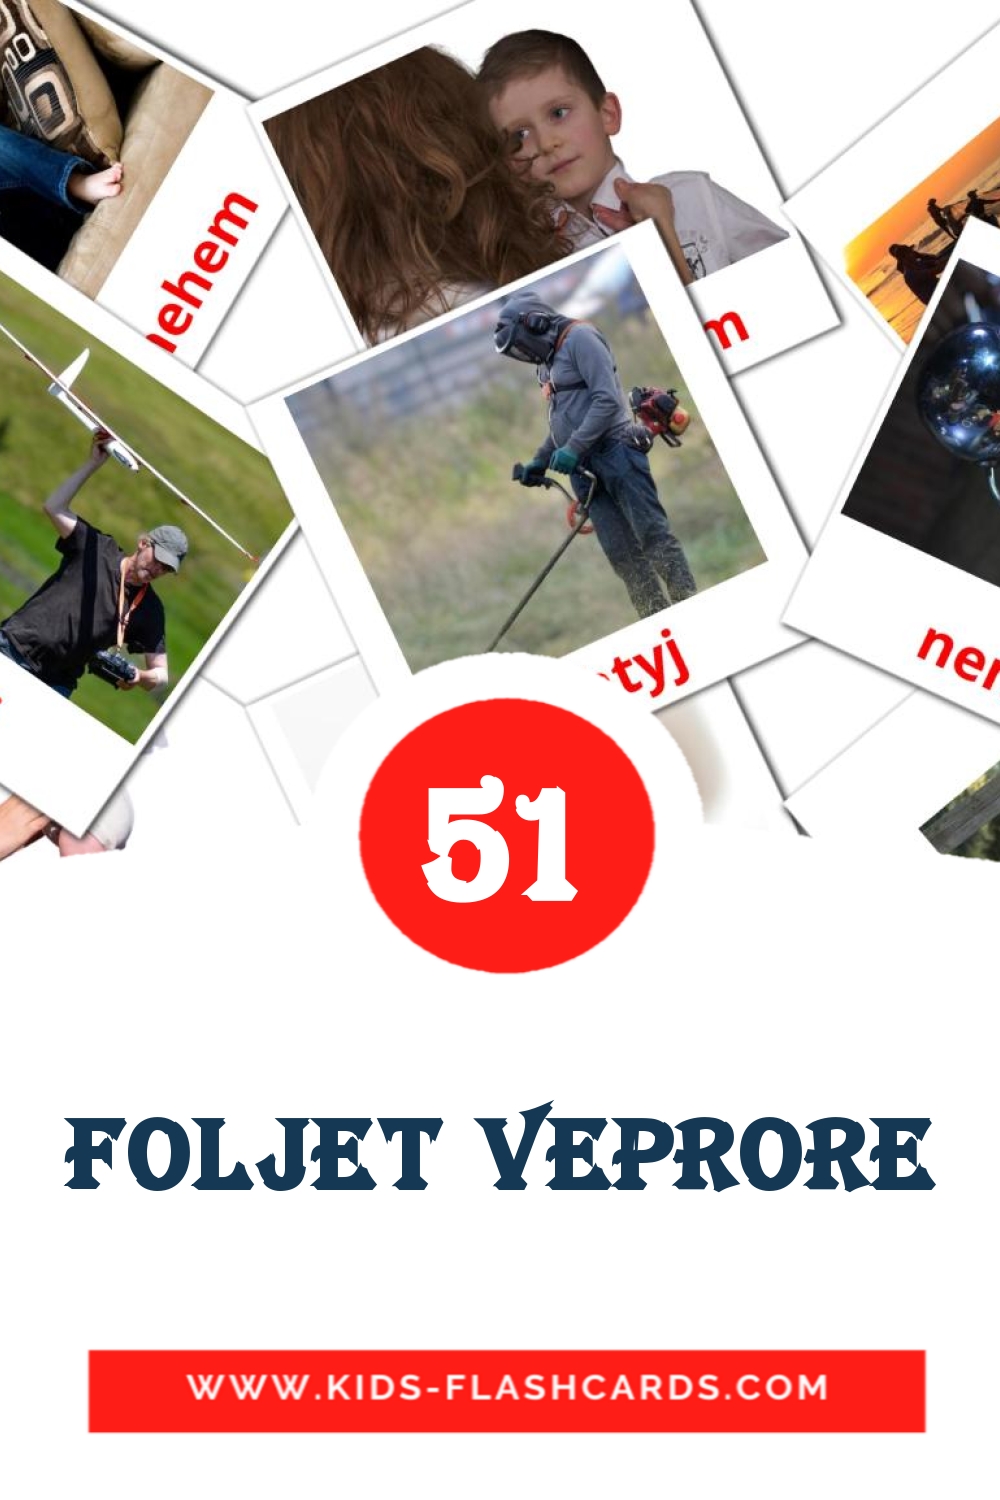 Foljet veprore на албанском для Детского Сада (54 карточки)